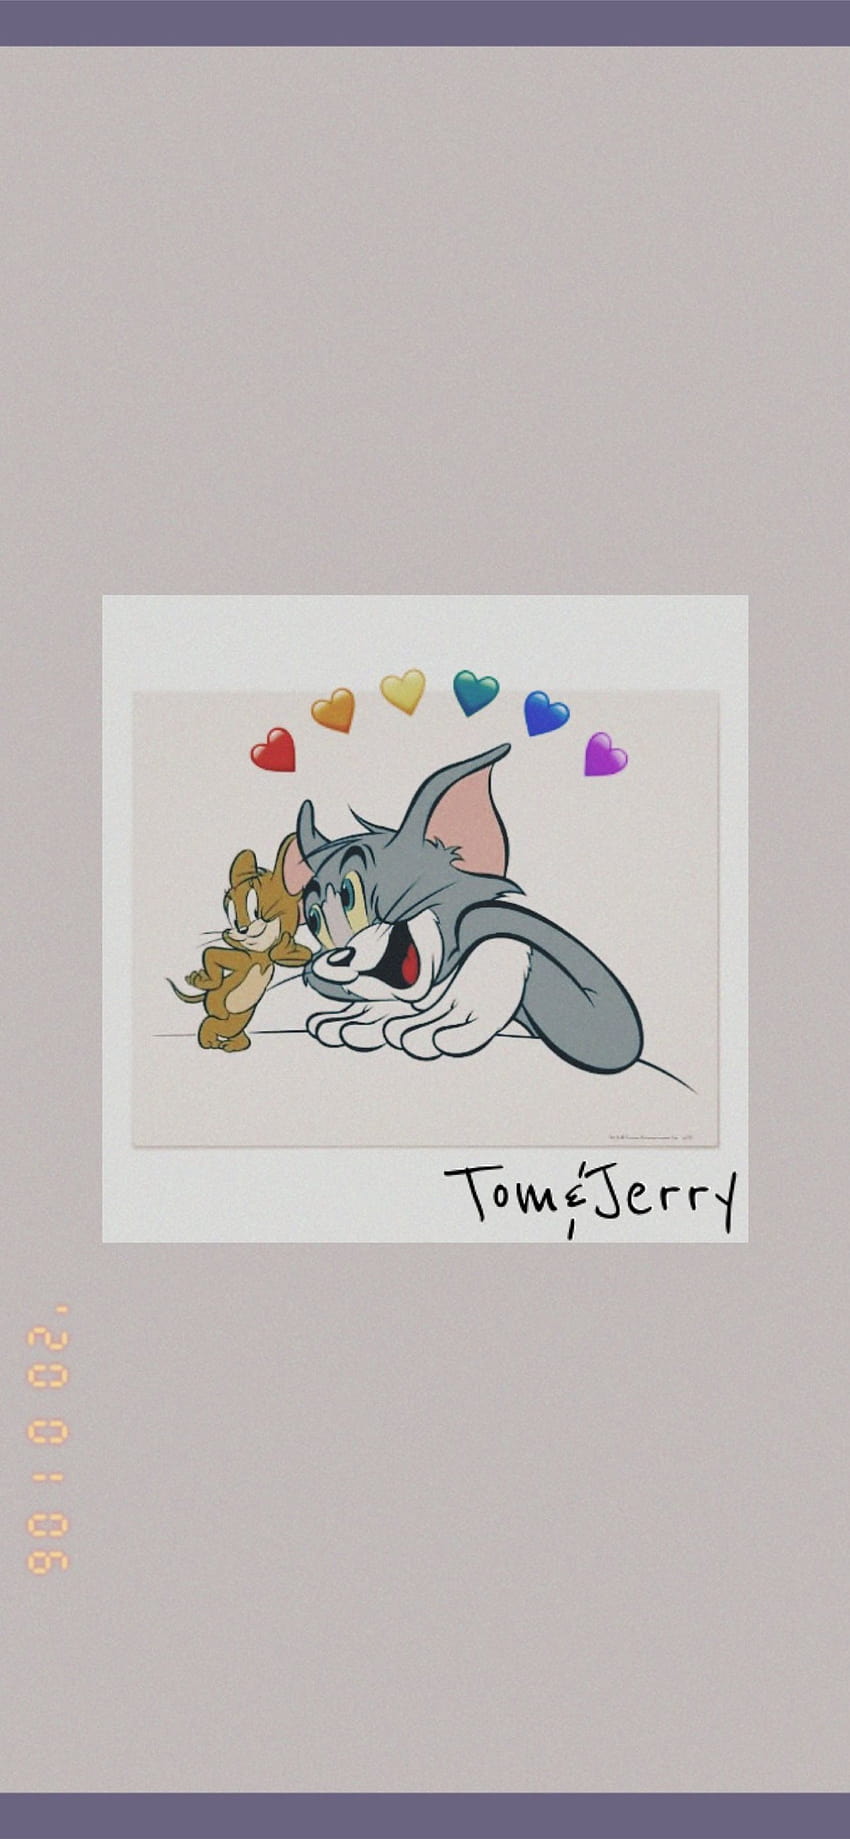 Tom Jerry en 2021 iPhone, tom y jerry iphone fondo de pantalla del teléfono